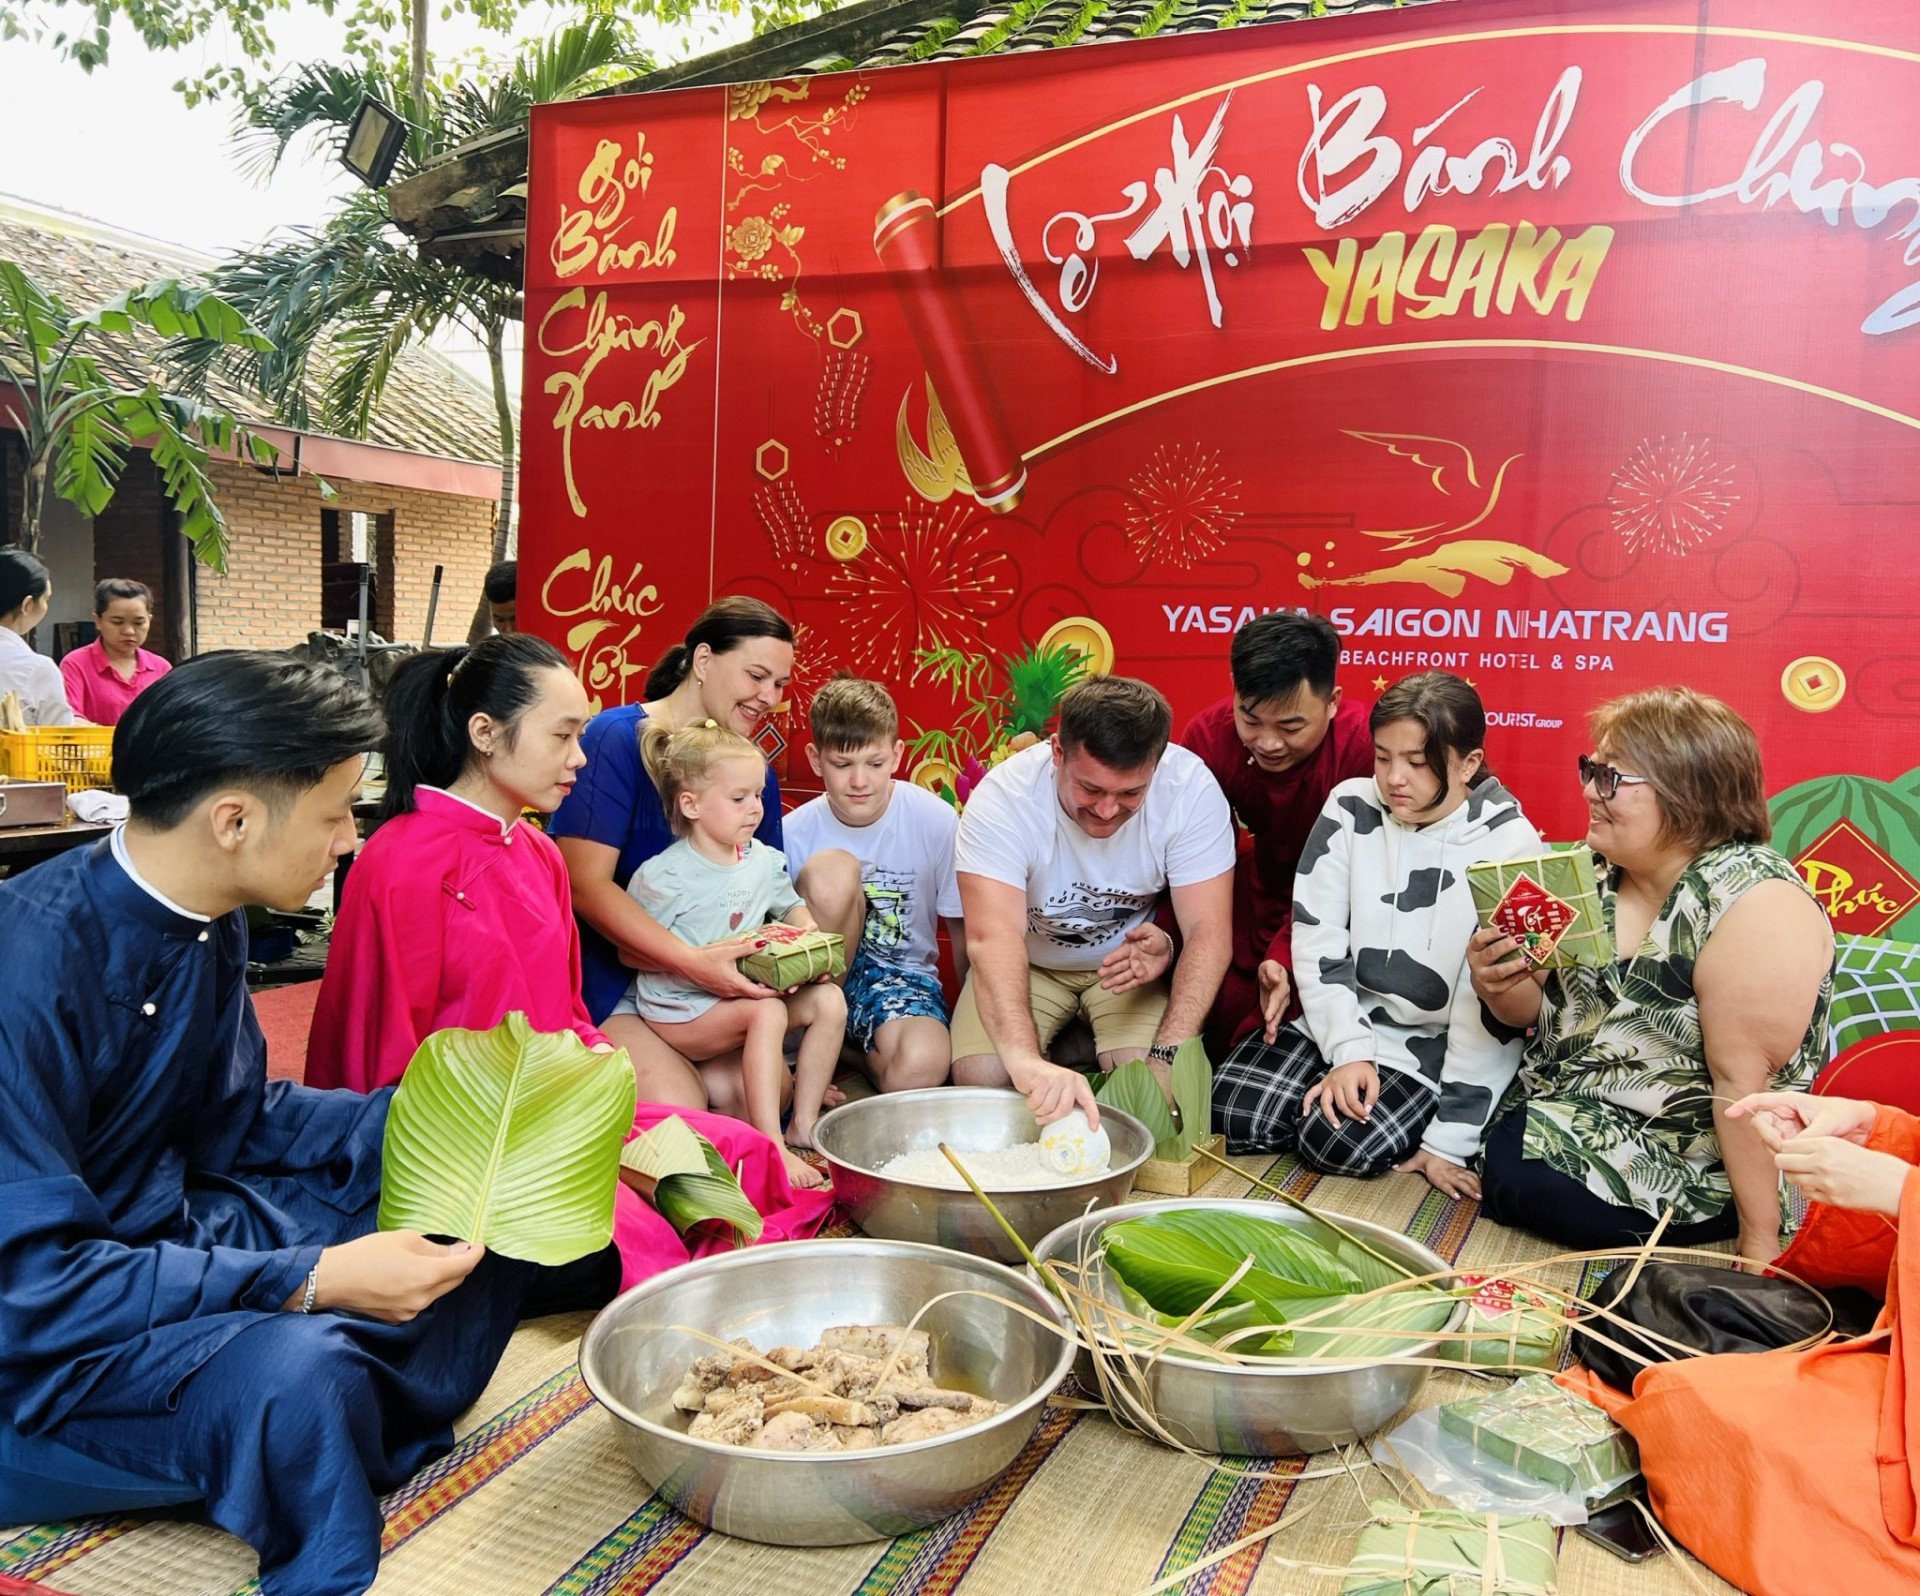 Một gia đình khách Nga thử gói bánh chưng với sự hướng dẫn của nhân viên khách sạn Yasaka-Siagon-Nhatrang